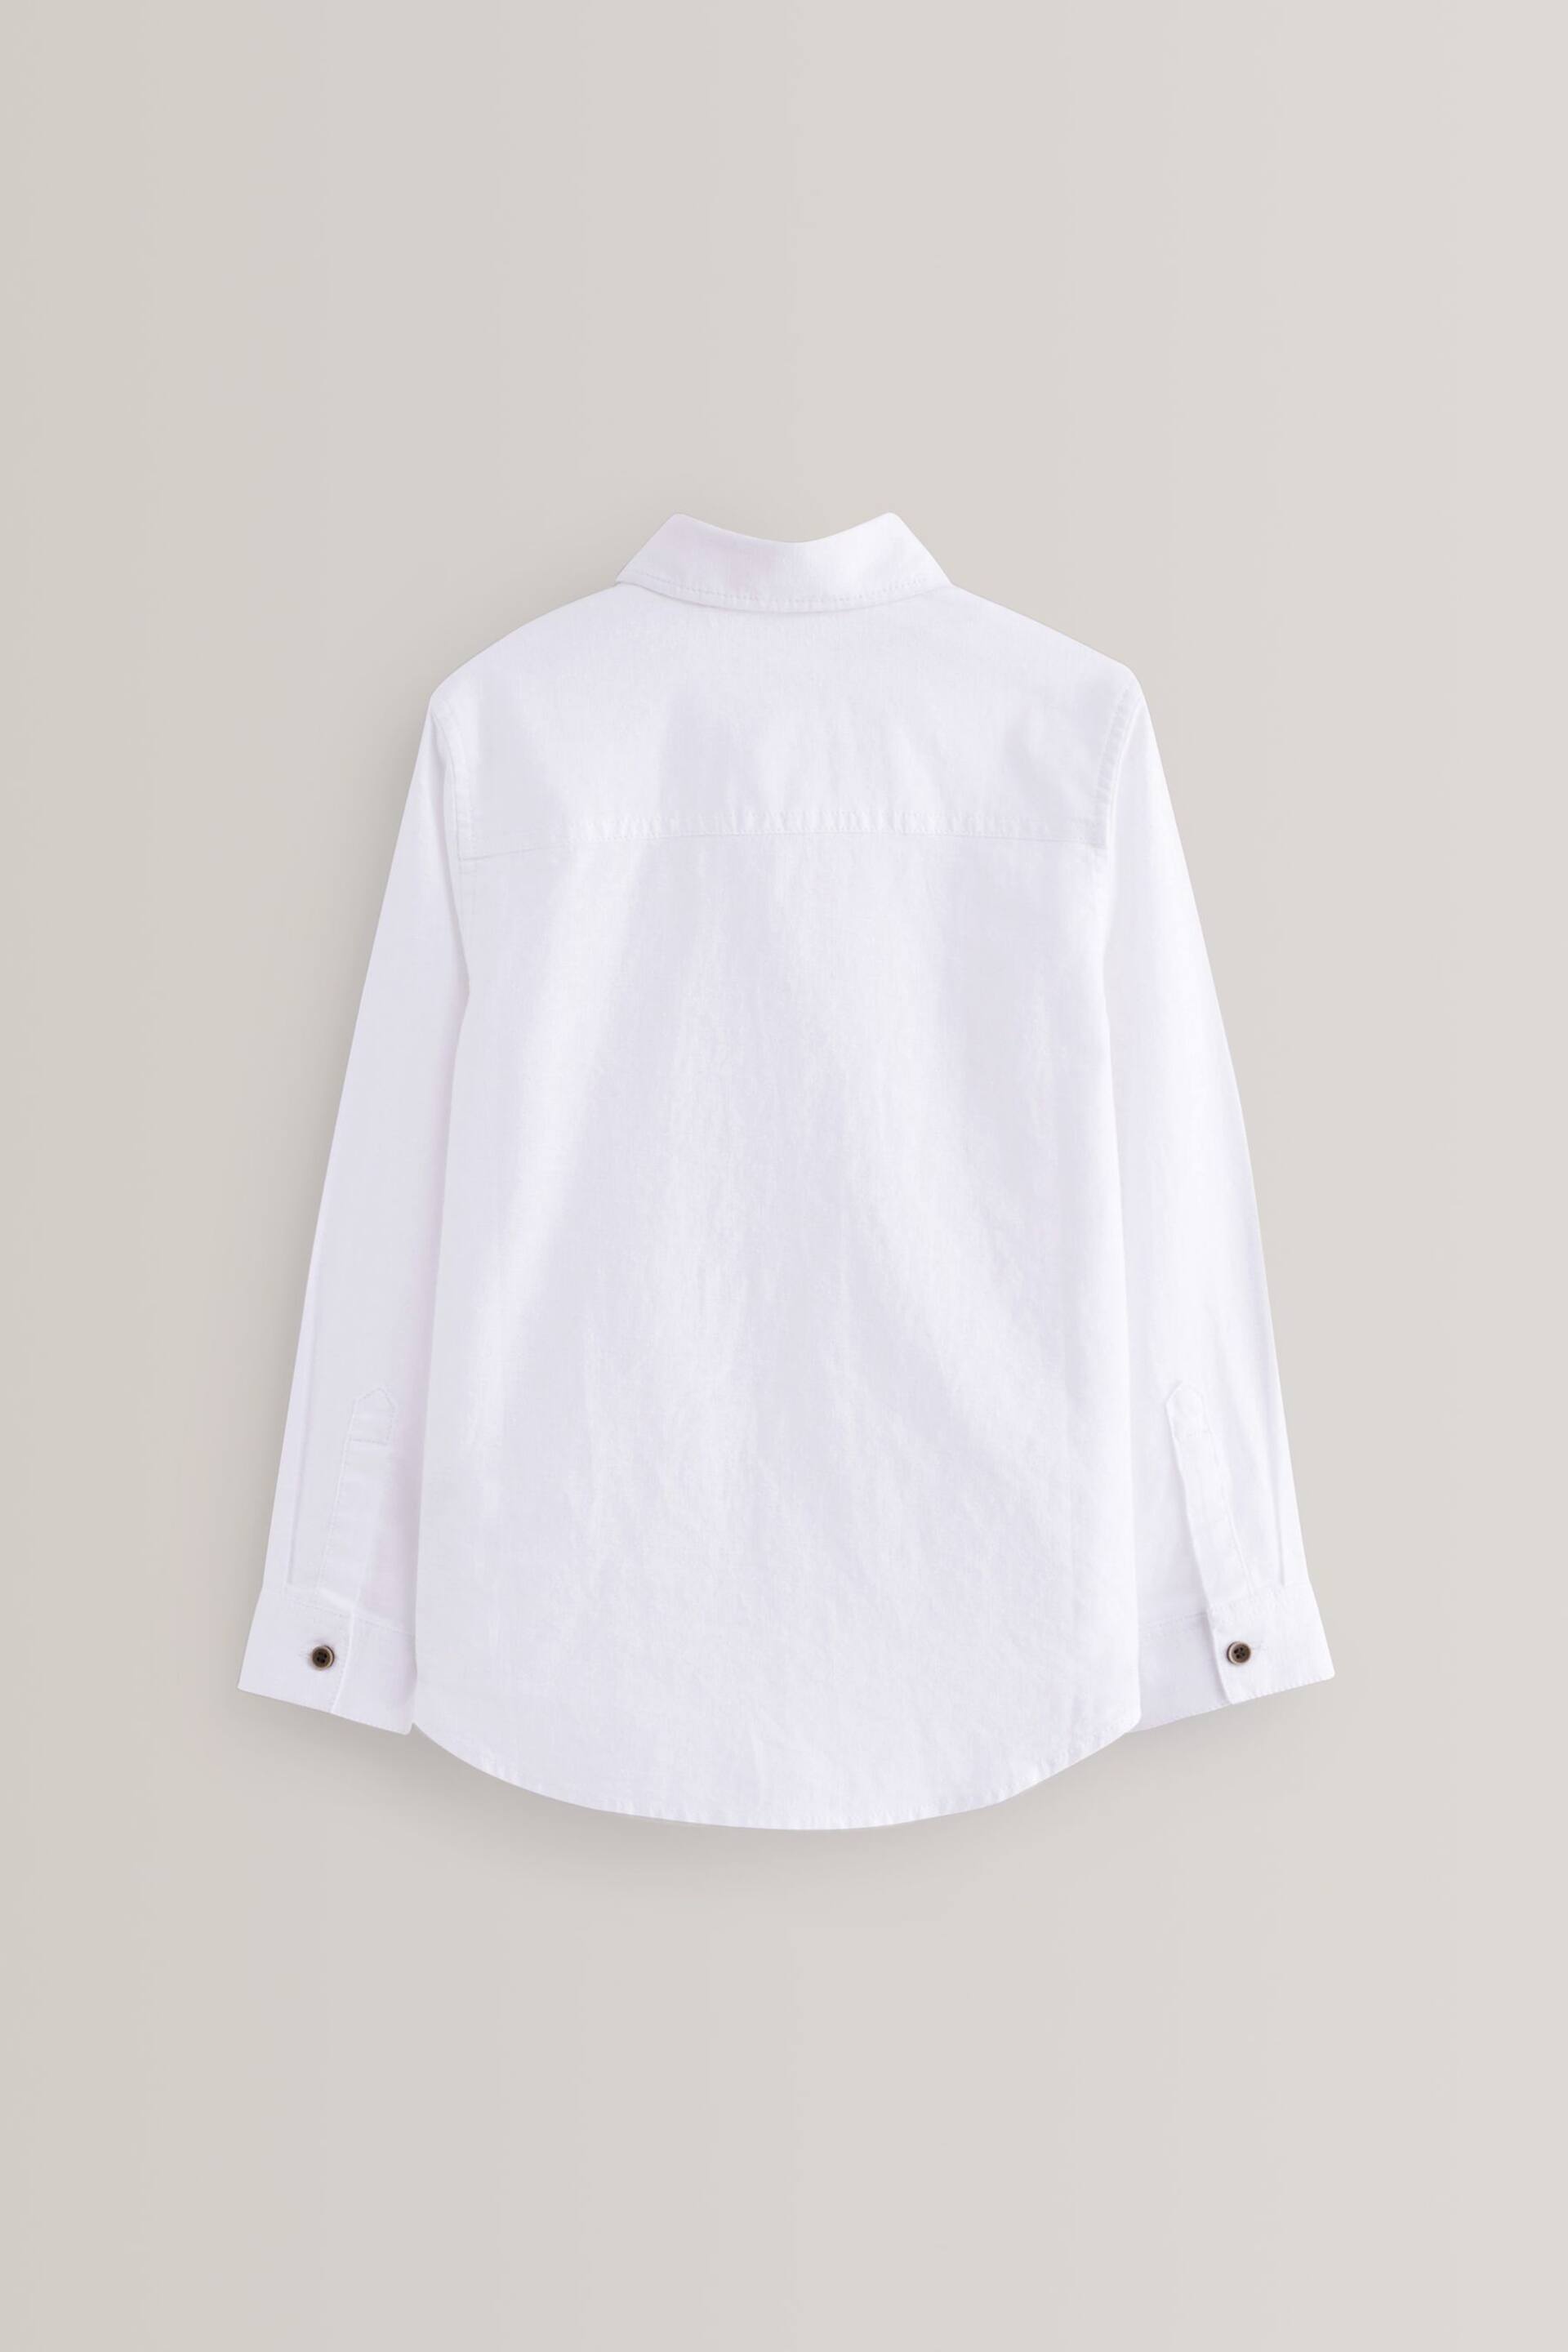 White Long Sleeve Linen Blend Shirt (3-16yrs) - Image 2 of 2